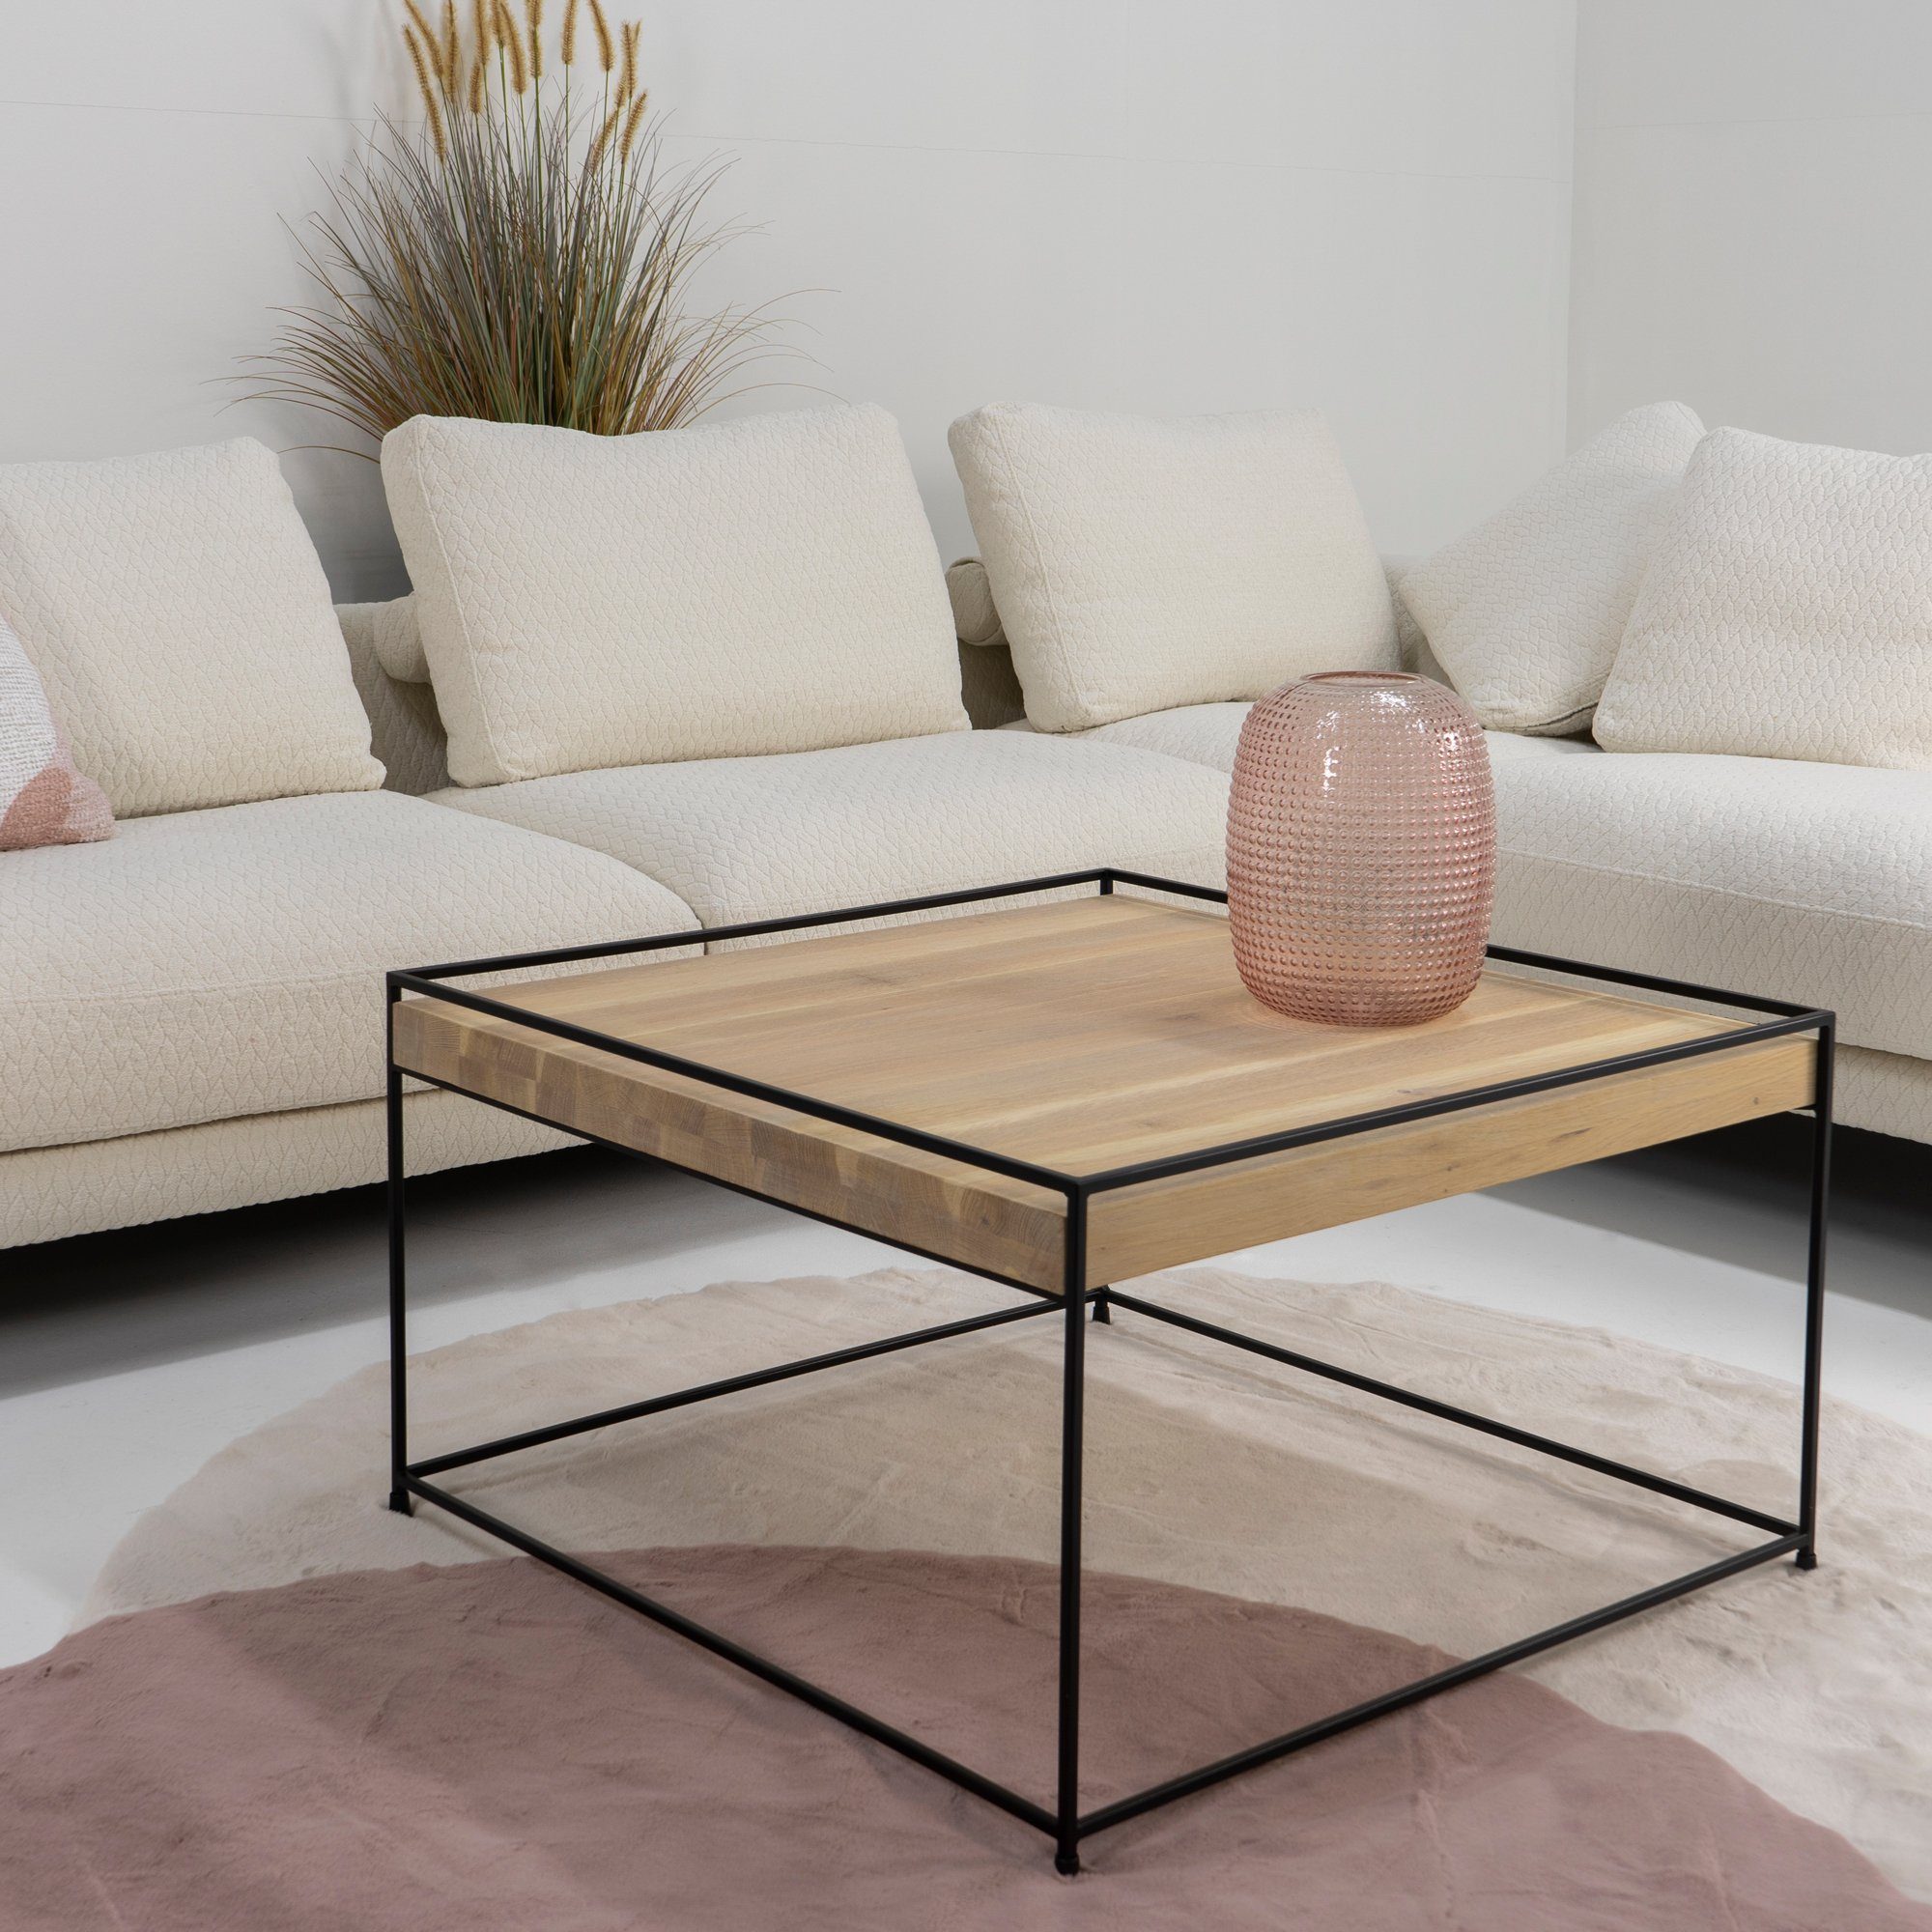 Torna Design Torna Beistelltisch Schwarz THIN 80 Beistelltisch WOOD Furniture BIANCO - 80x46x80cm